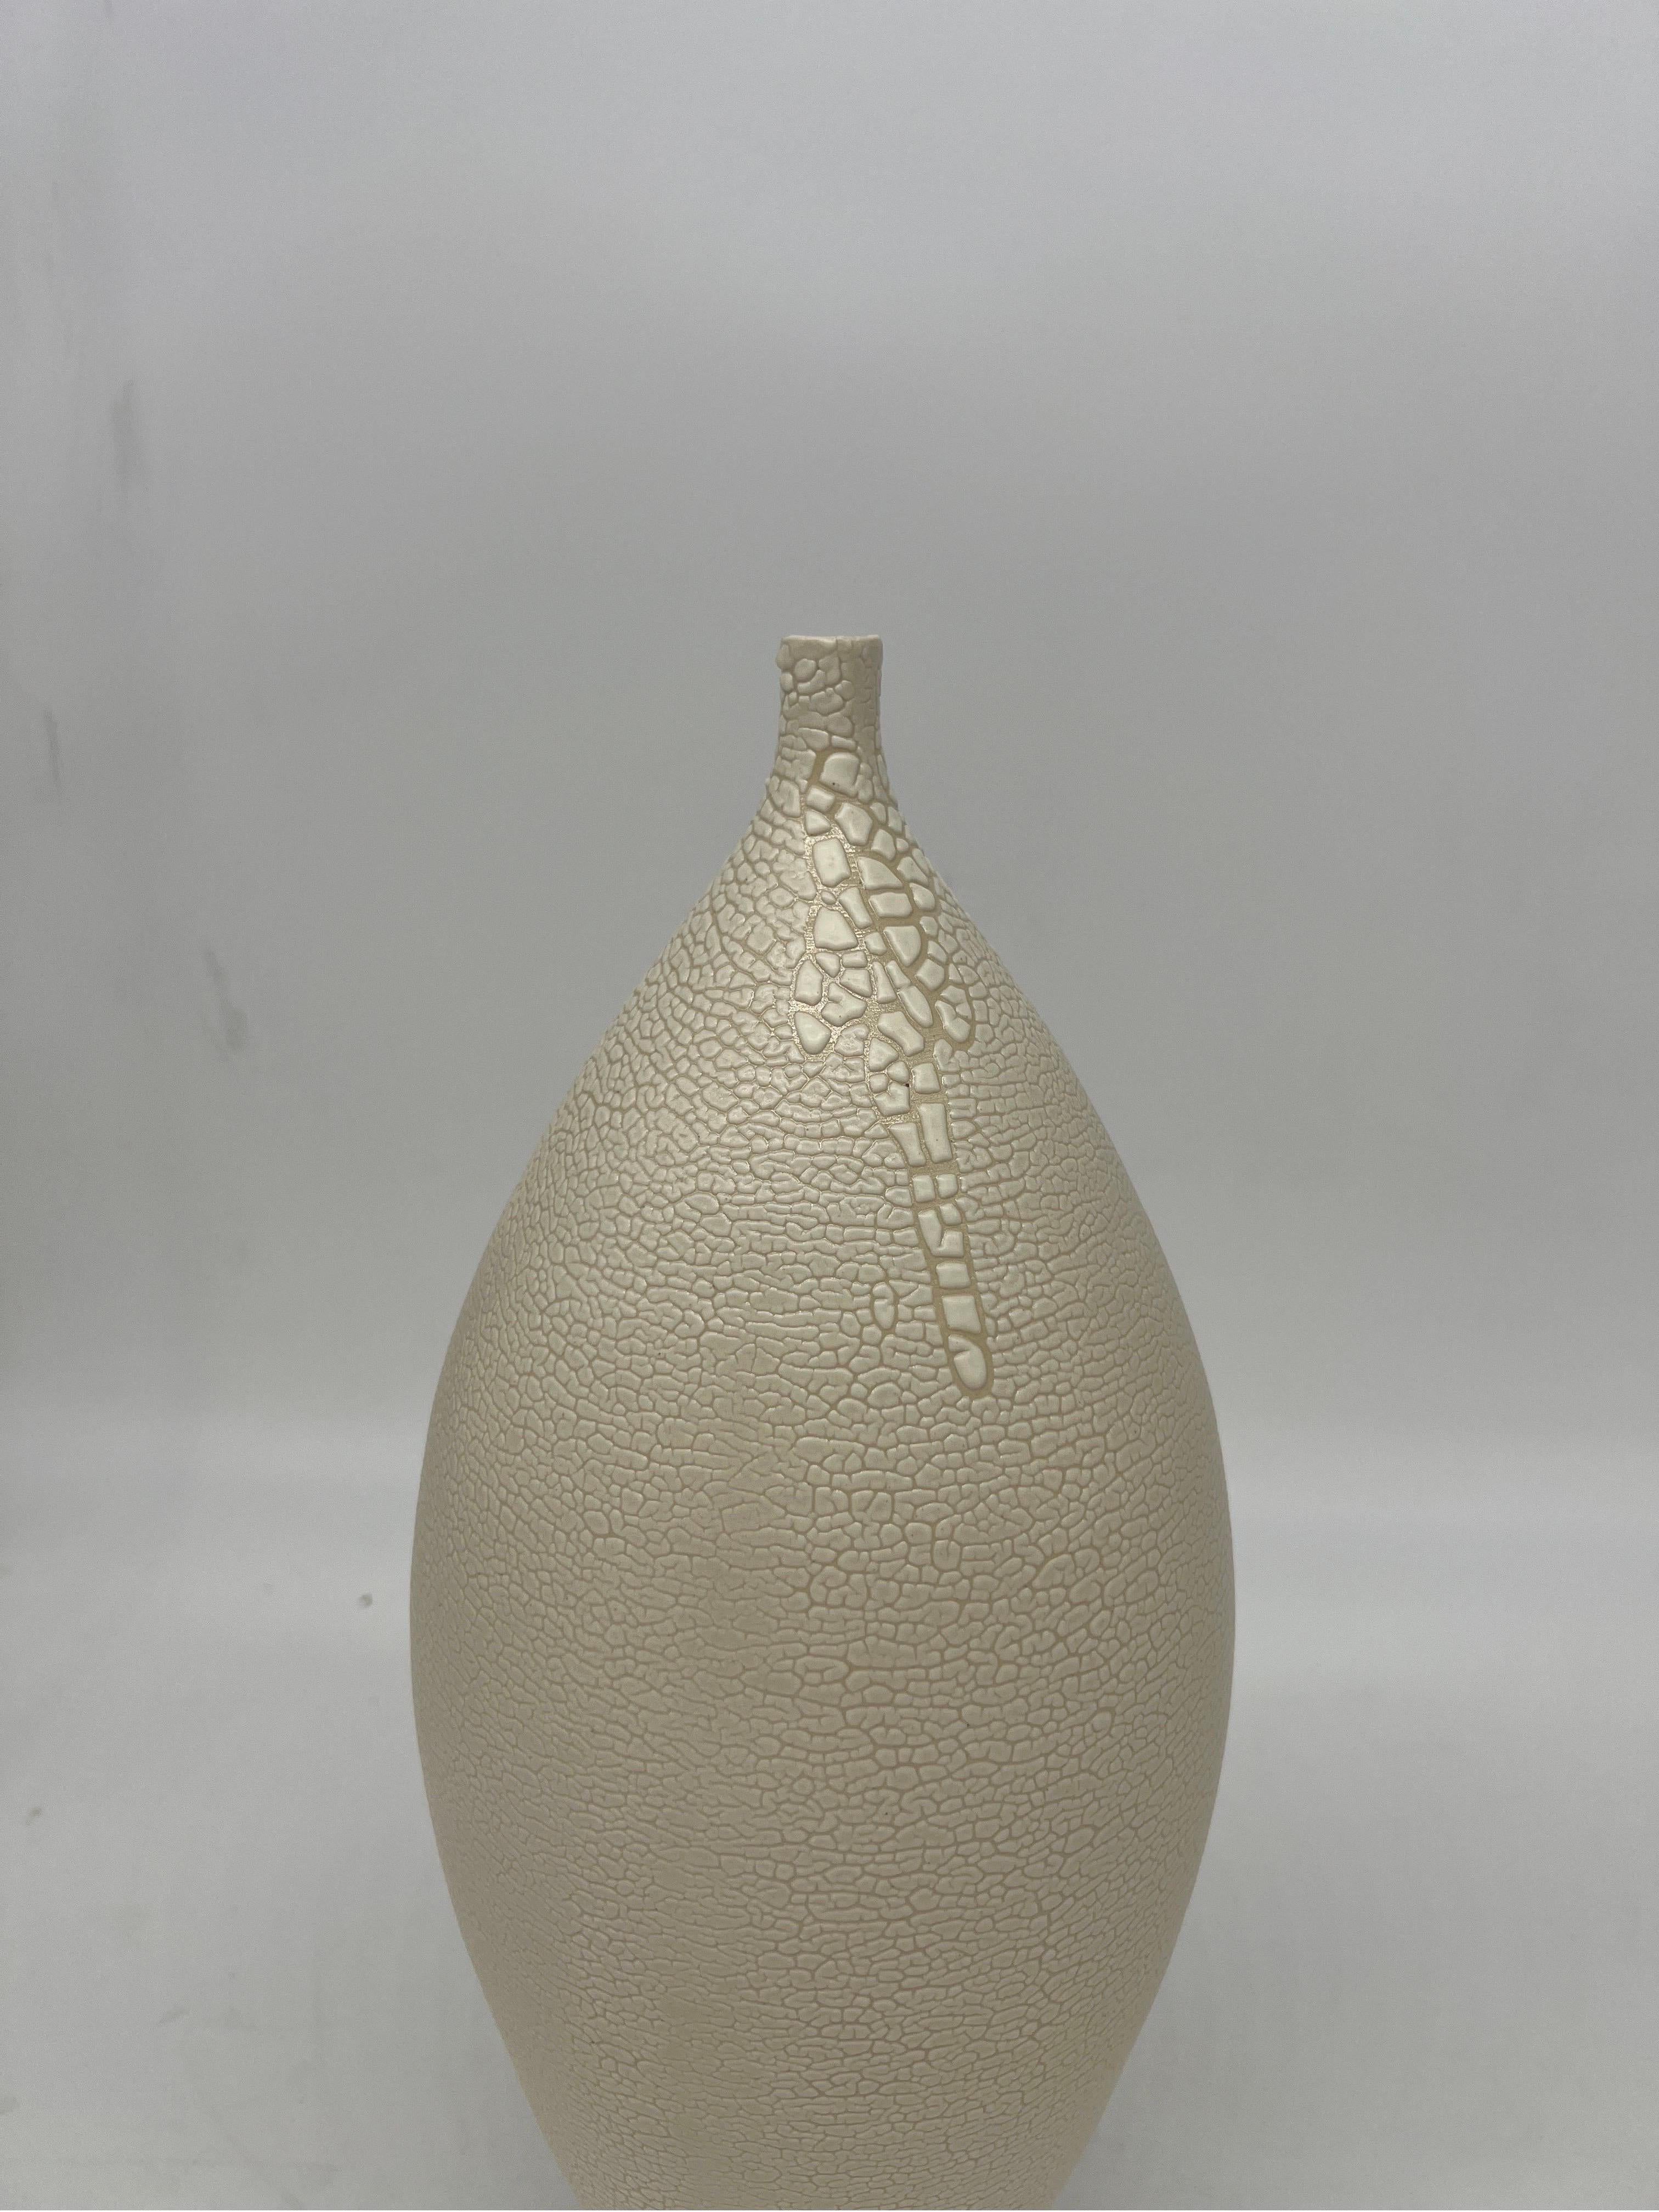 Ce vase a été réalisé par un artisan non identifié, probablement à la fin du 20e siècle. Acheté à la succession d'un médecin accompli d'Atlanta. Le vase a un corps blanc avec un travail sculpté et un style de glaçure à la lave dans le goût japonais. 